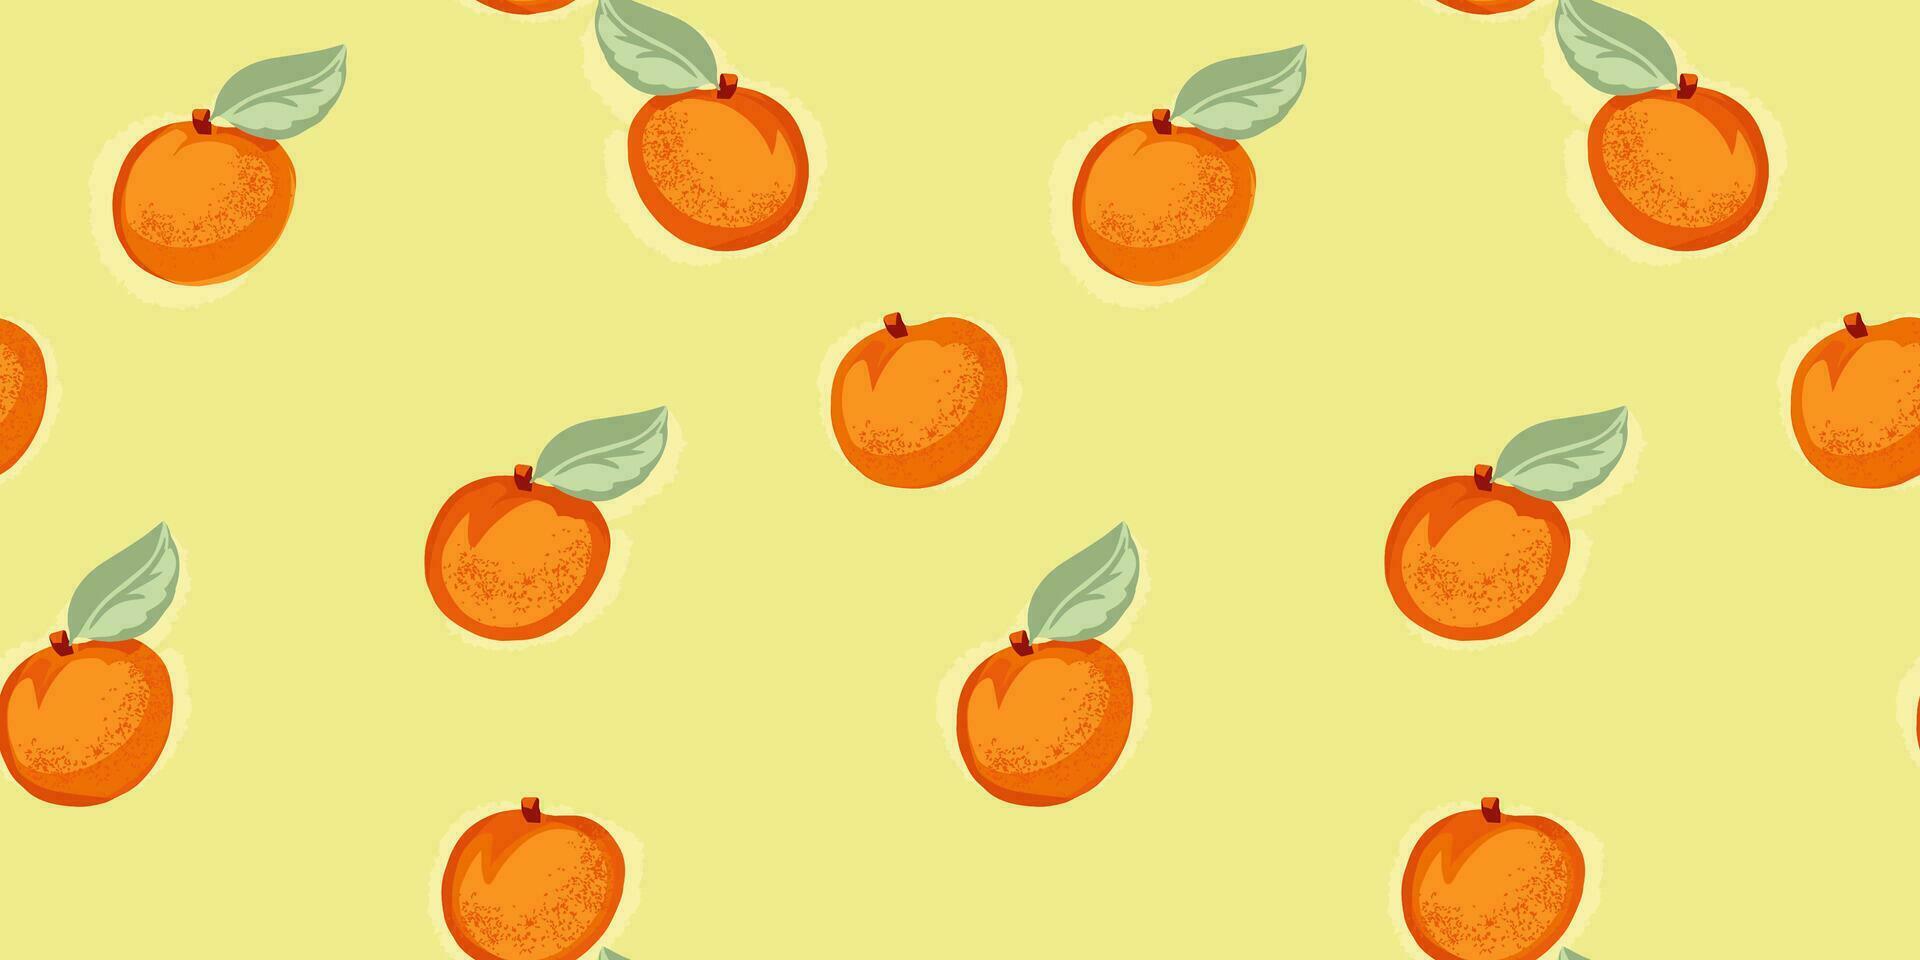 kreativ ljus orange aprikos eller persika sömlös mönster på en gul bakgrund. vektor hand dragen skiss klotter. sommar frukt illustration för skriva ut. mall för design, textil, mode